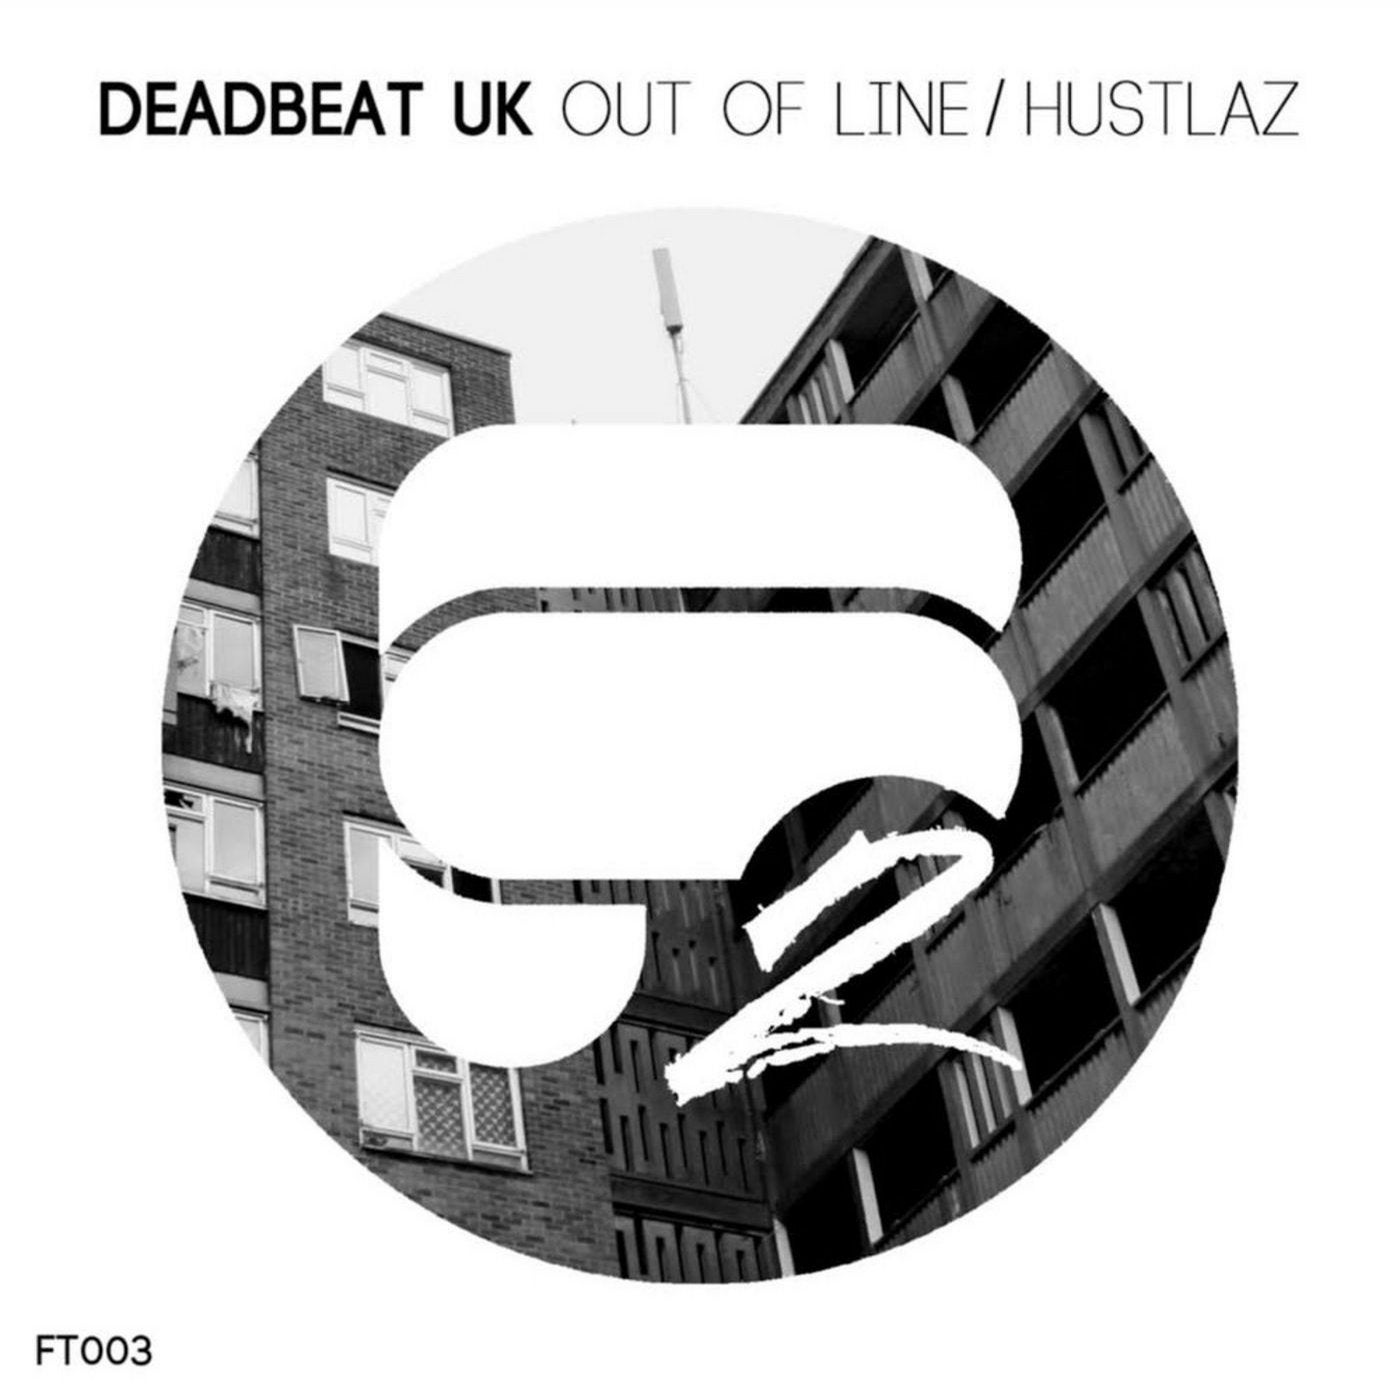 Out of Line / Hustlaz